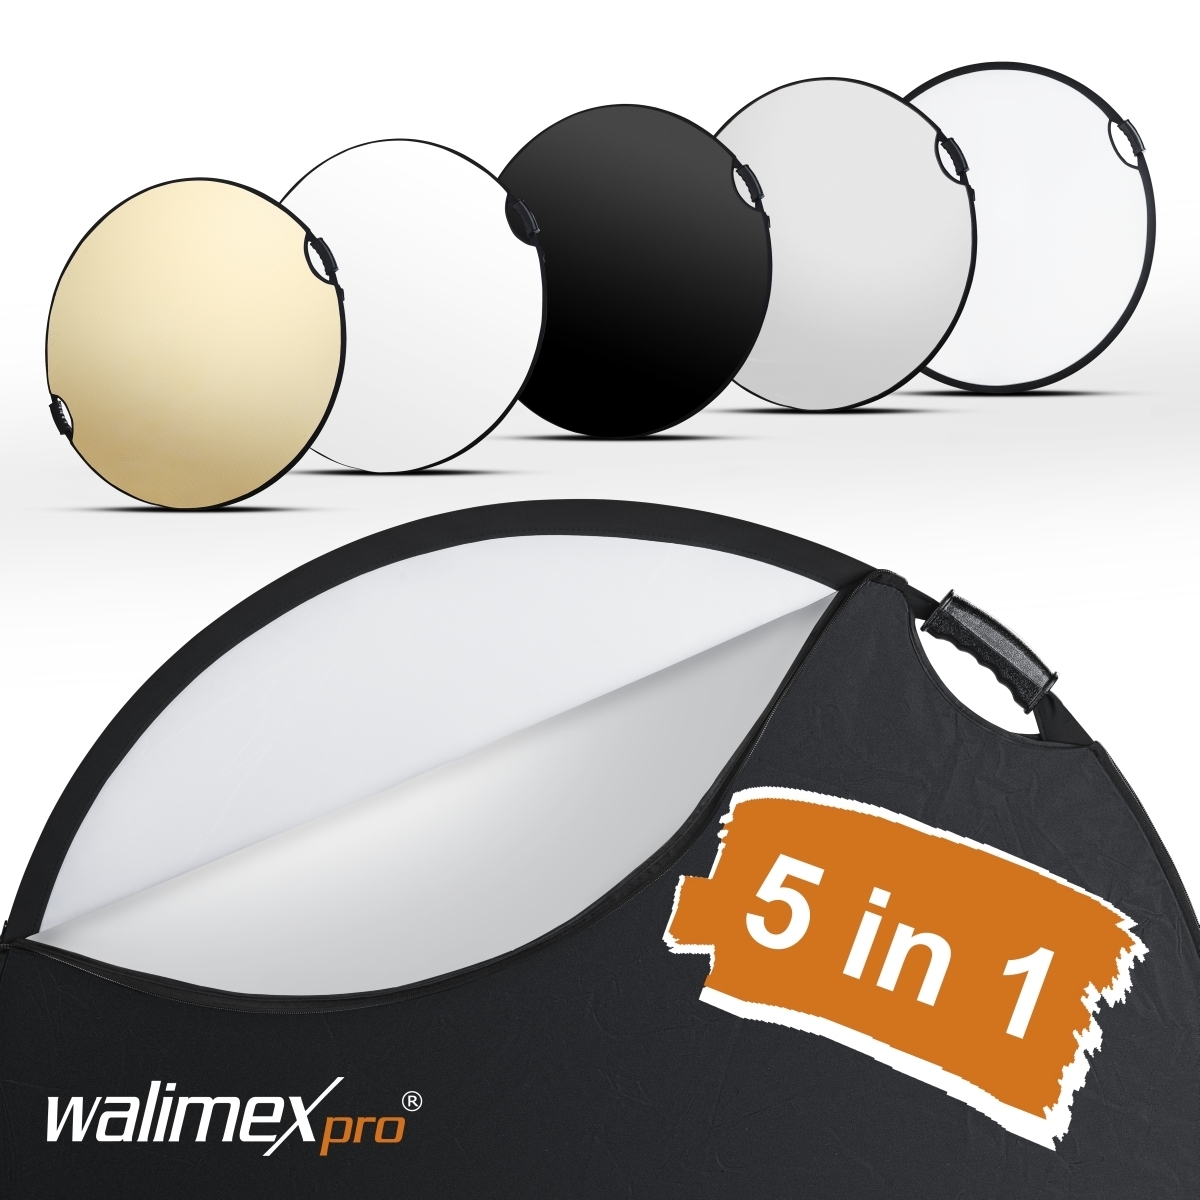 Walimex pro 5in1 vouwreflector wavy comfort Ø107cm met handgrepen en 5 reflectorkleuren